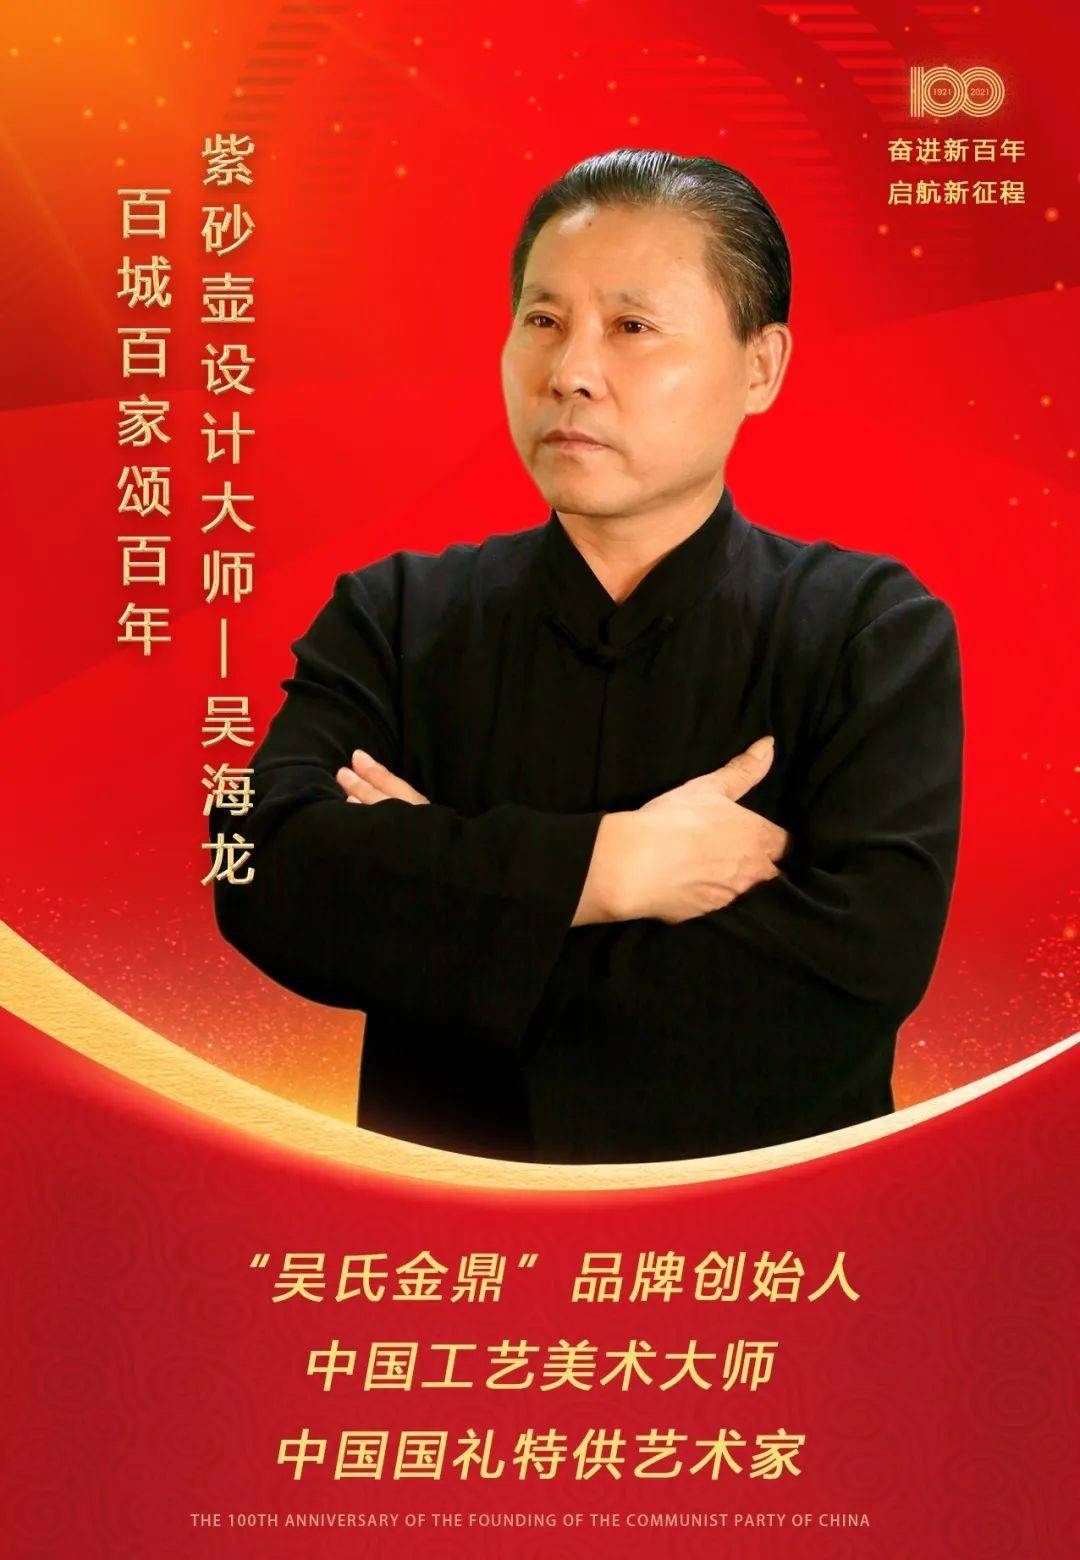 特别推荐艺术大家——吴海龙-新闻快讯-中国画廊网